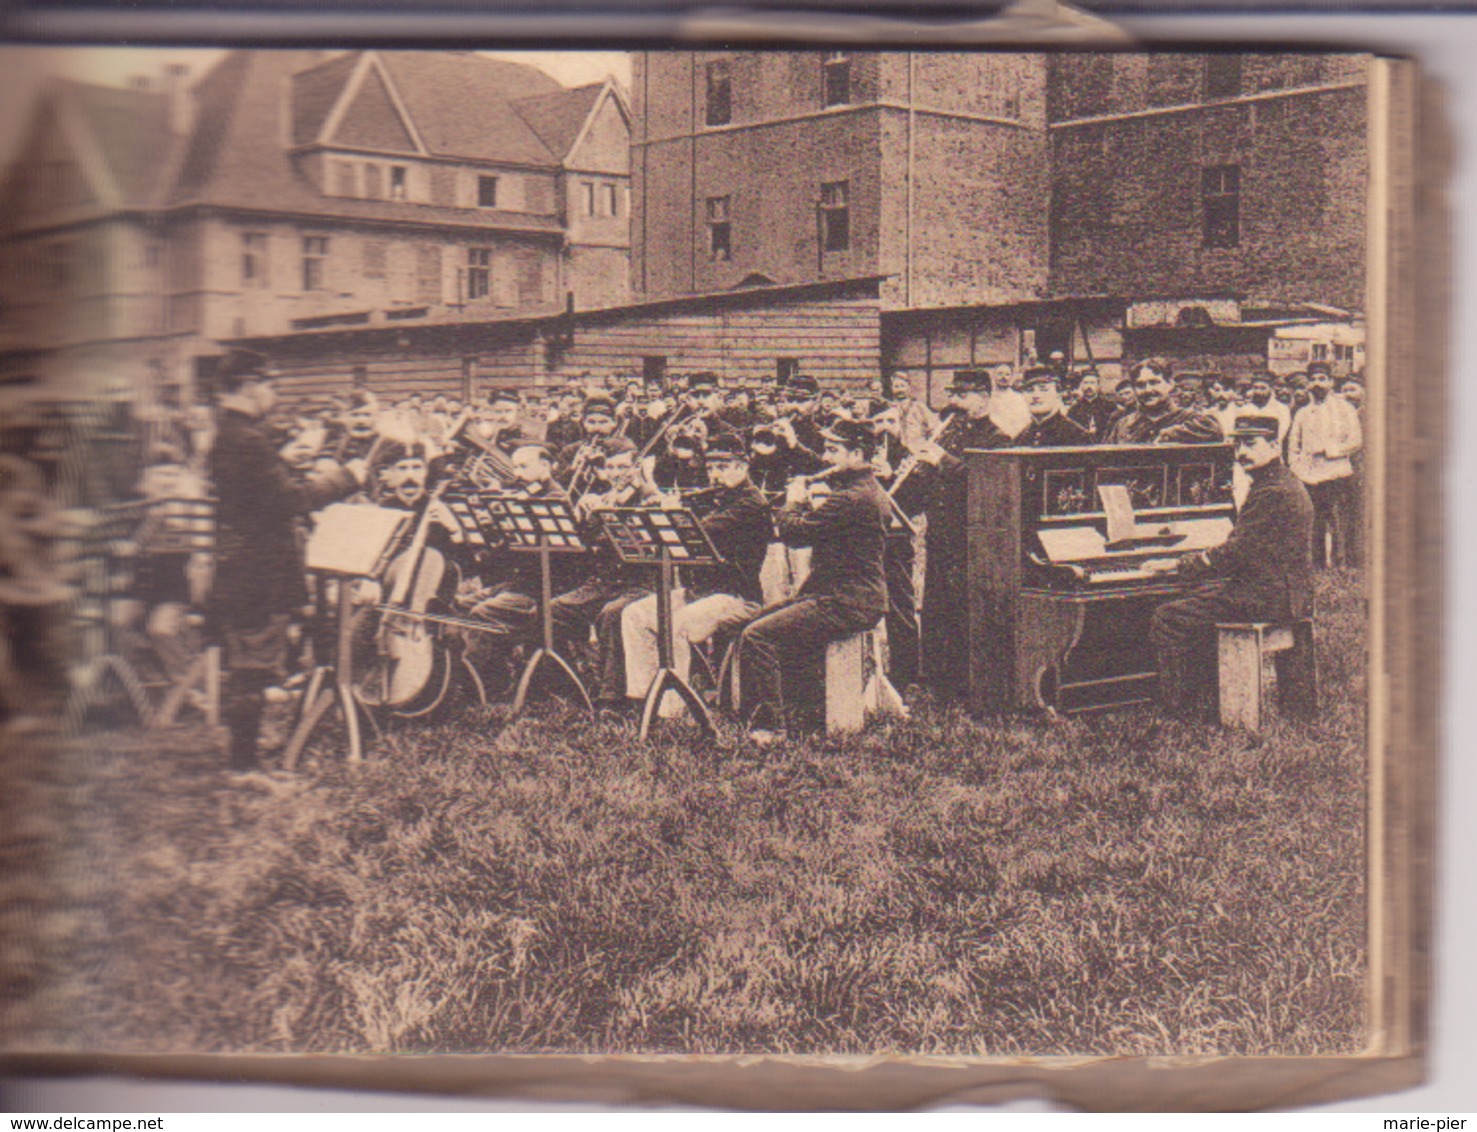 Munster- Souvenir Du Camp De Prisonniers III- Andenken An Das Kriegsgefangenlager III 30 Cartes - Guerre 1914-18